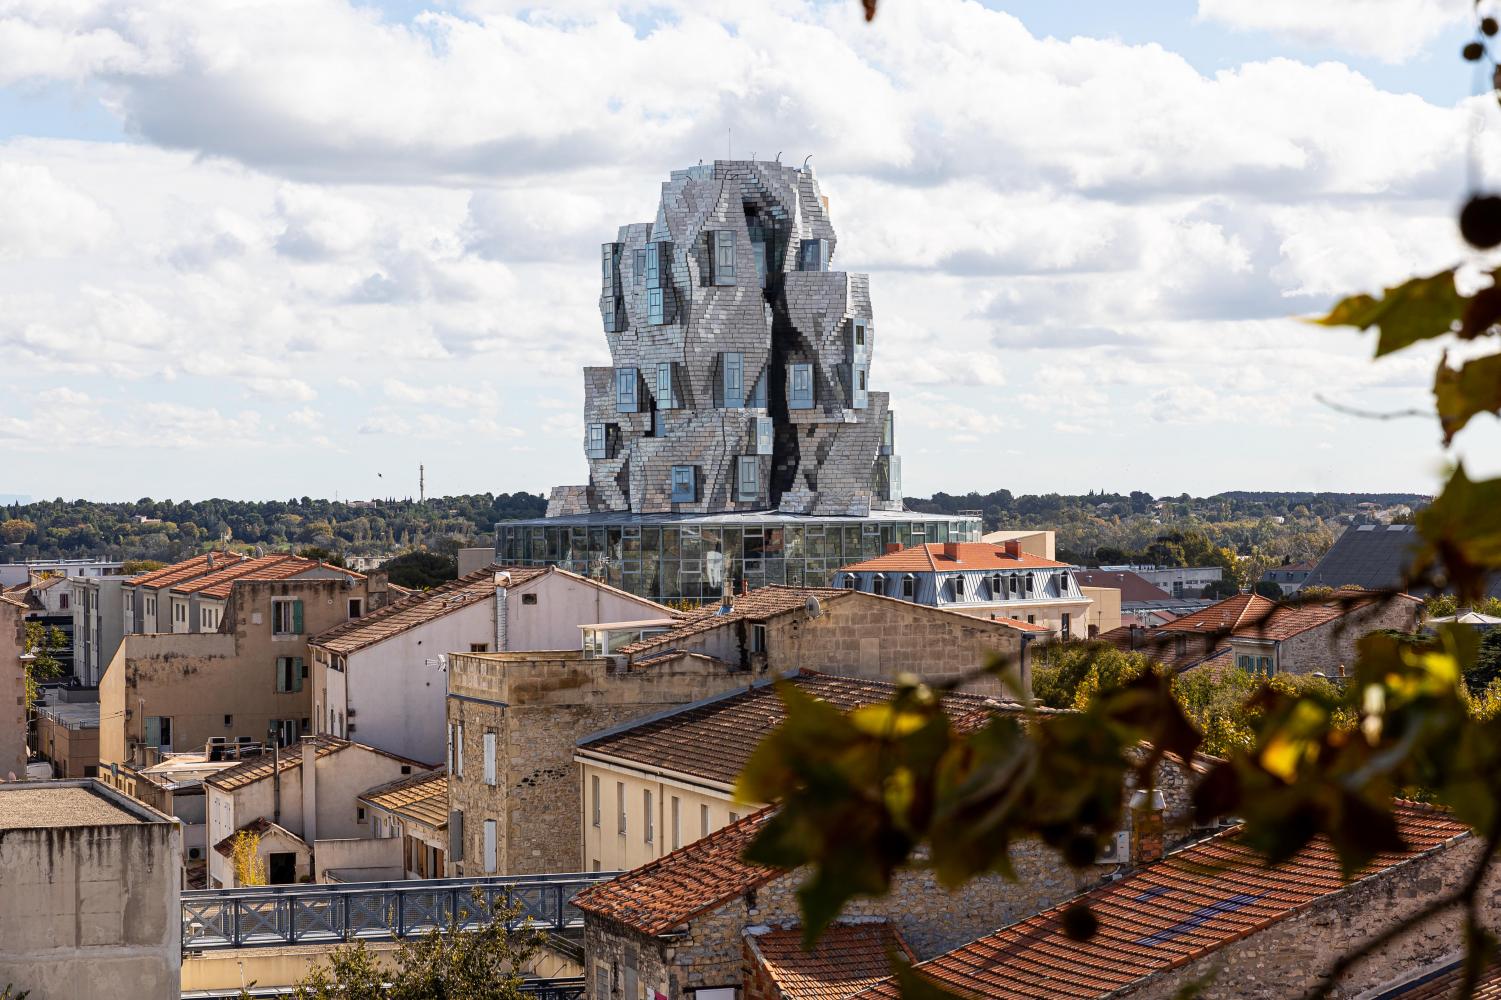  Der Luma Foundation Turm des Architekten F. Gehry ragt über die Dächer von Arles